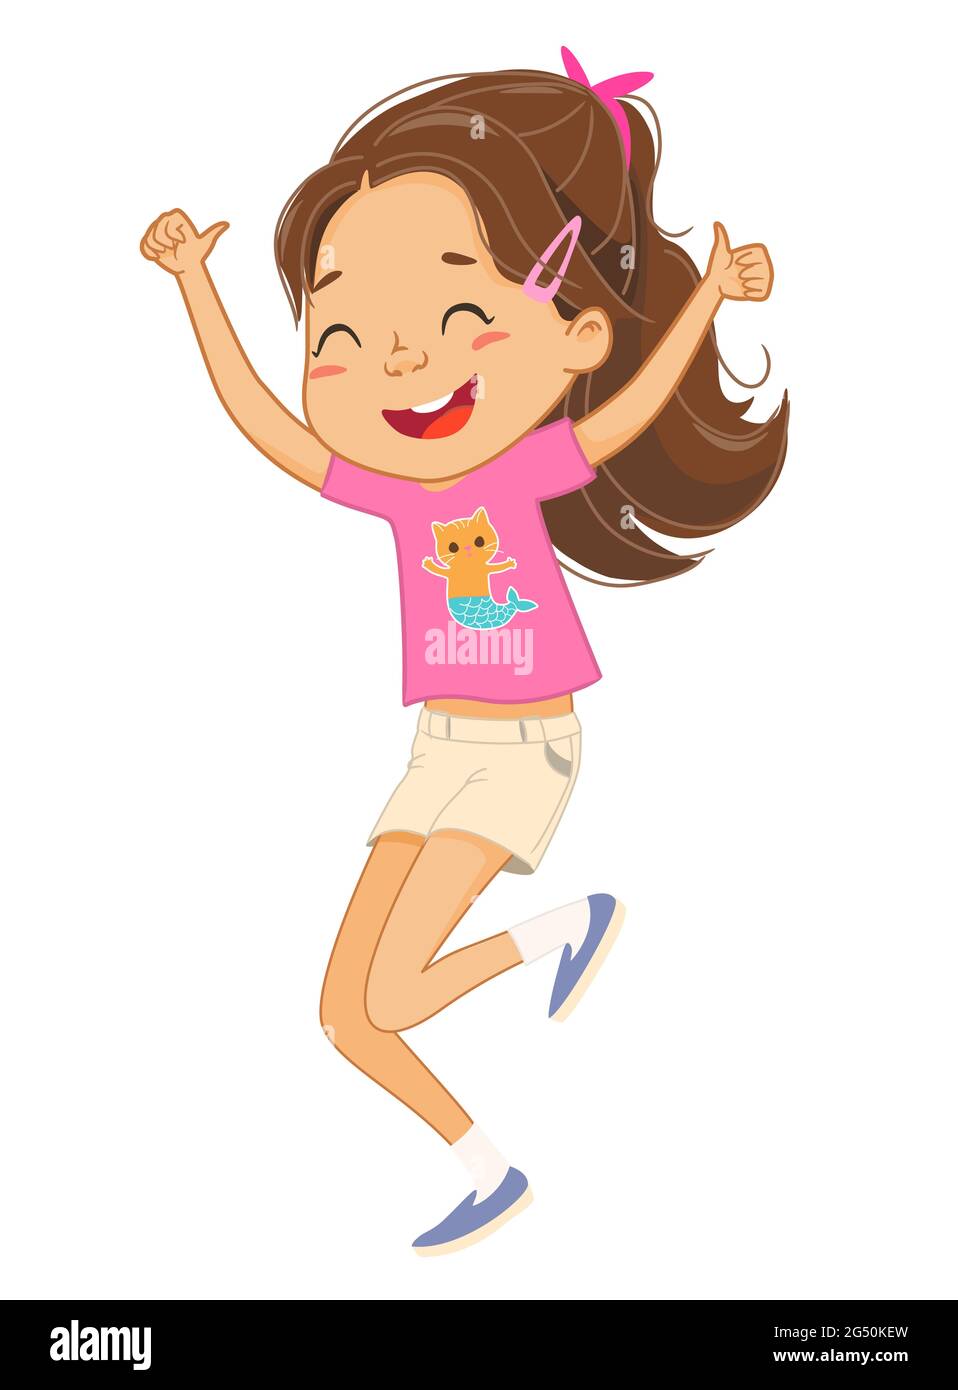 Illustrazione della ragazza dei capelli bruni felice che salta e balla. Illustrazione Vettoriale